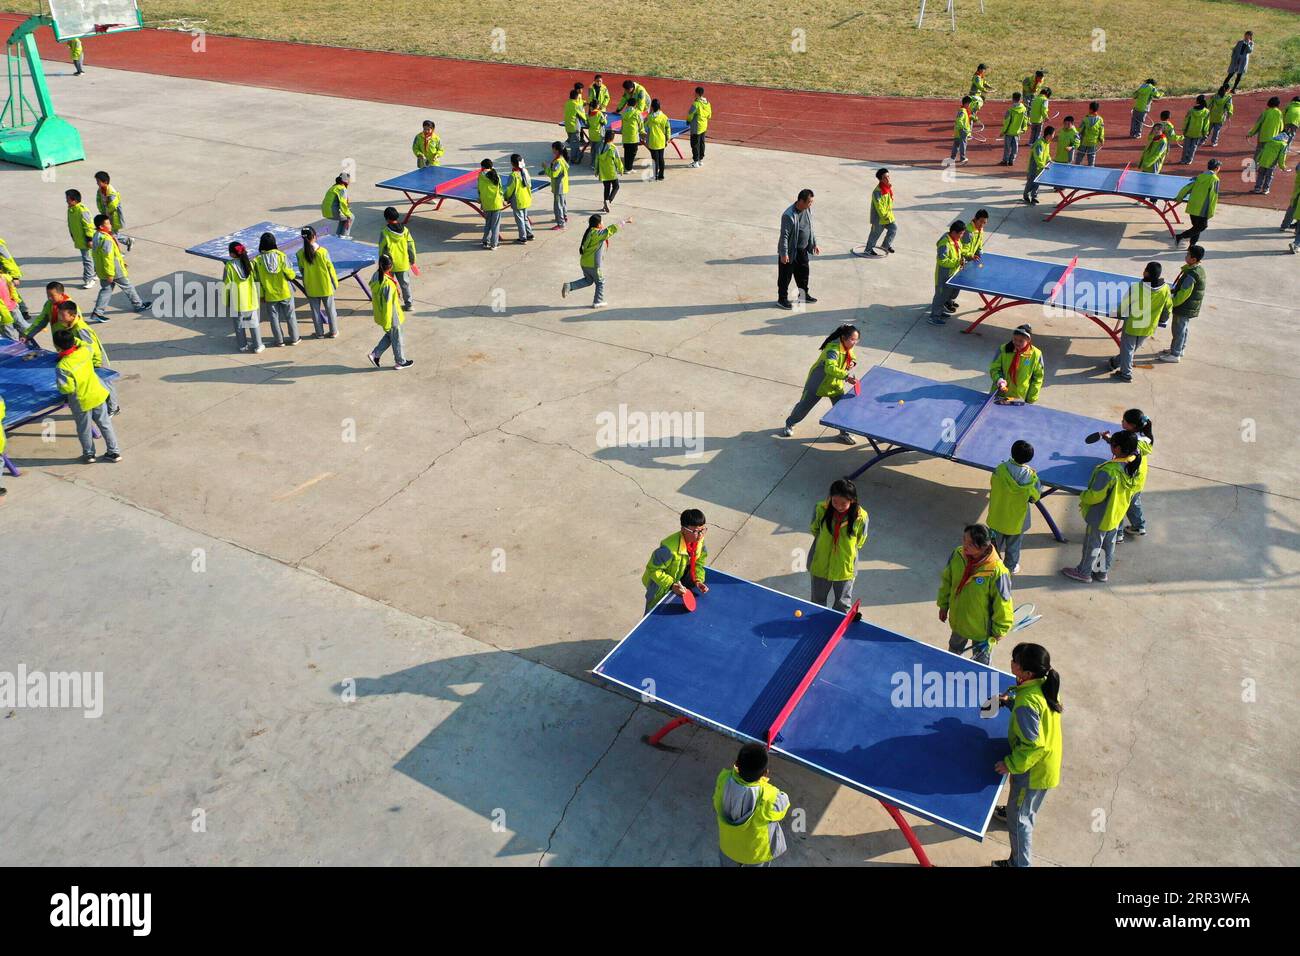 201112 -- QINGDAO, 12 novembre 2020 -- foto aerea scattata il 12 novembre 2020 mostra gli studenti che giocano a ping-pong durante una pausa di classe alla scuola elementare Dong gaobu di Qingdao, nella provincia dello Shandong nella Cina orientale. Negli ultimi anni, la scuola ha svolto varie attività sportive durante le pause di classe più lunghe come modo per aiutare gli studenti a rilassarsi e migliorare le loro condizioni fisiche. Foto di /Xinhua CHINA-SHANDONG-QINGDAO-SCHOOL-CLASS BREAK CN LiangxXiaopeng PUBLICATIONxNOTxINxCHN Foto Stock